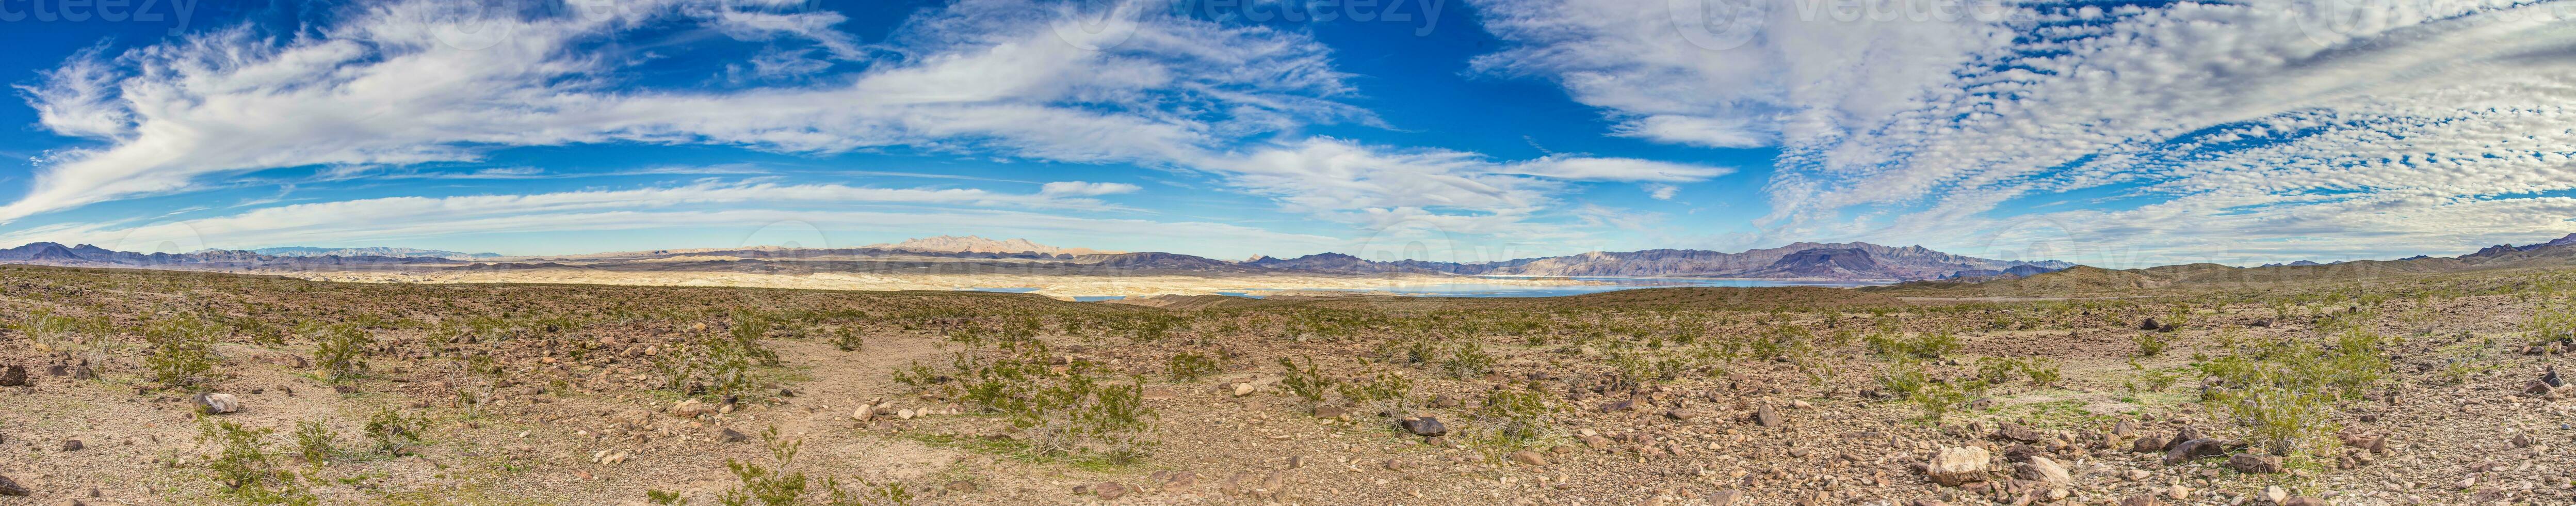 panoramique vue de Lac Powell avec alentours désert photo